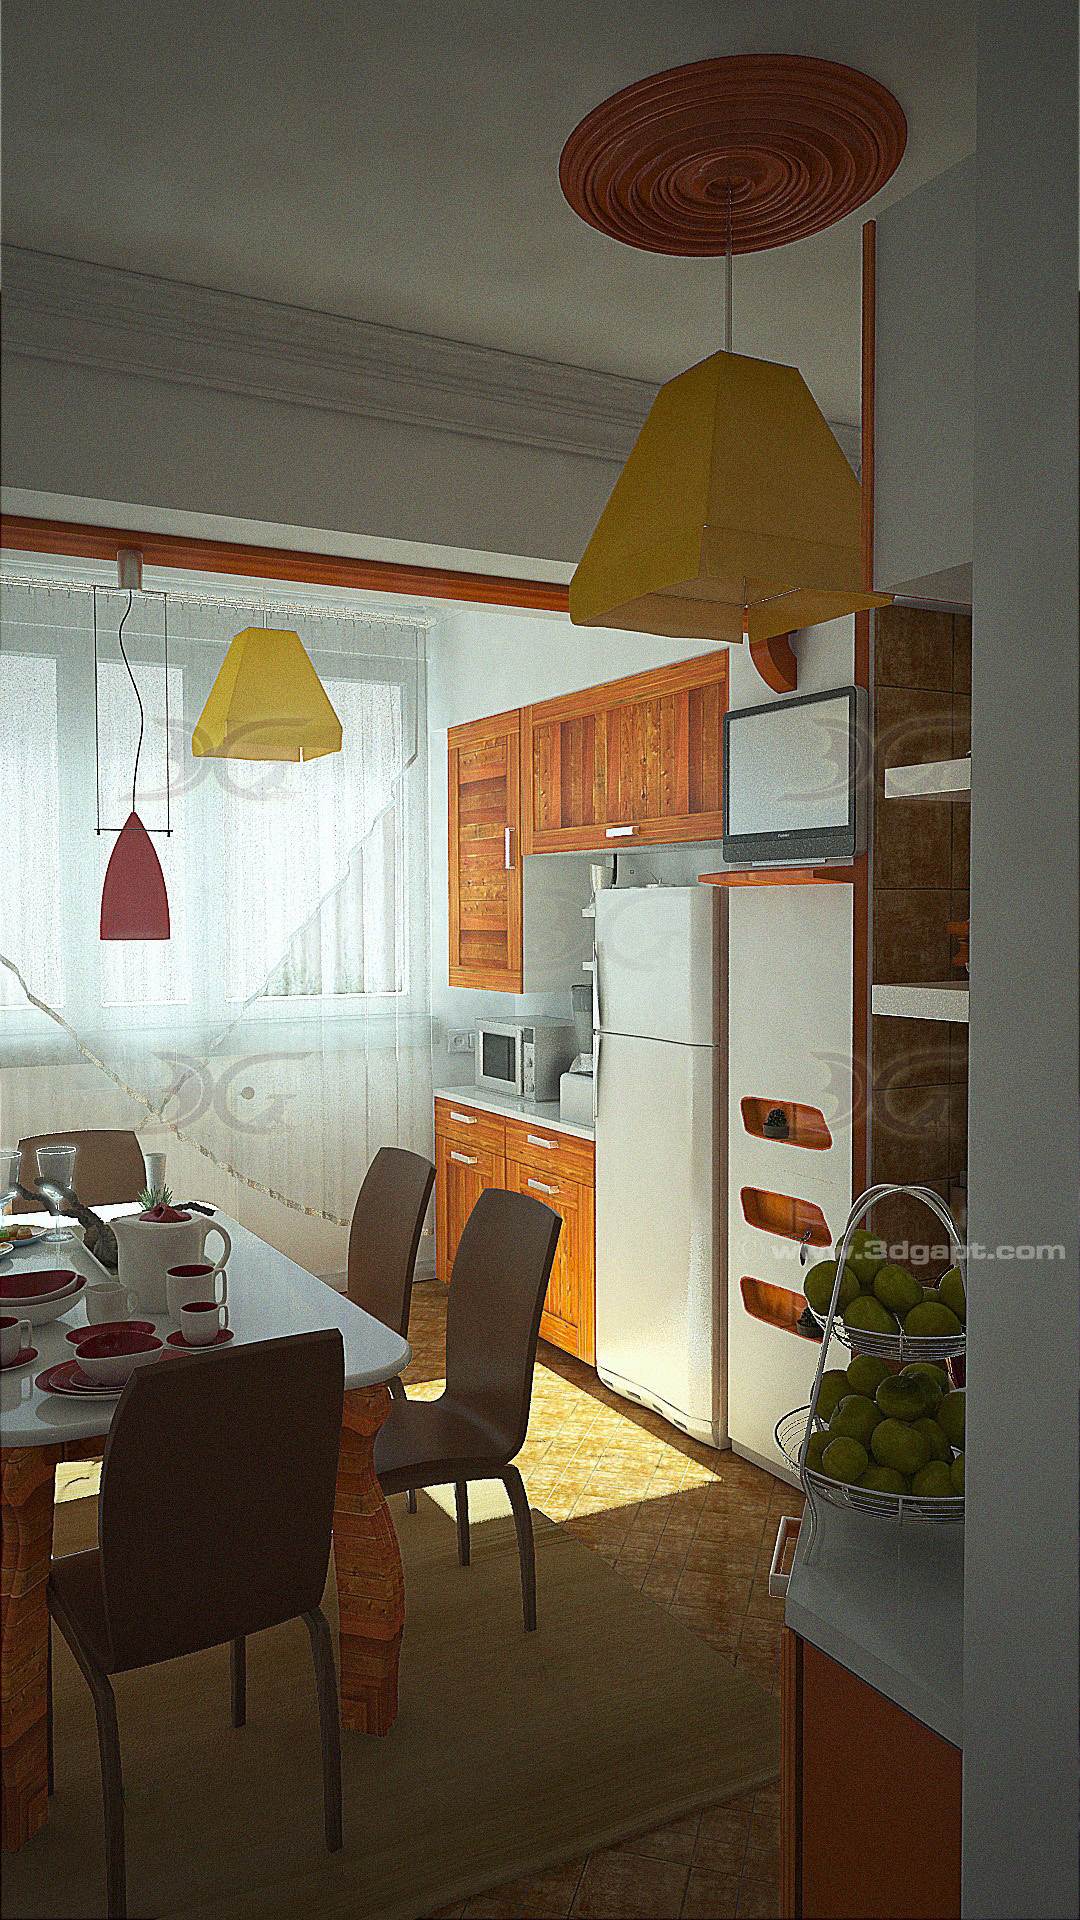 Architecture Interior Kitchen 3versions 16